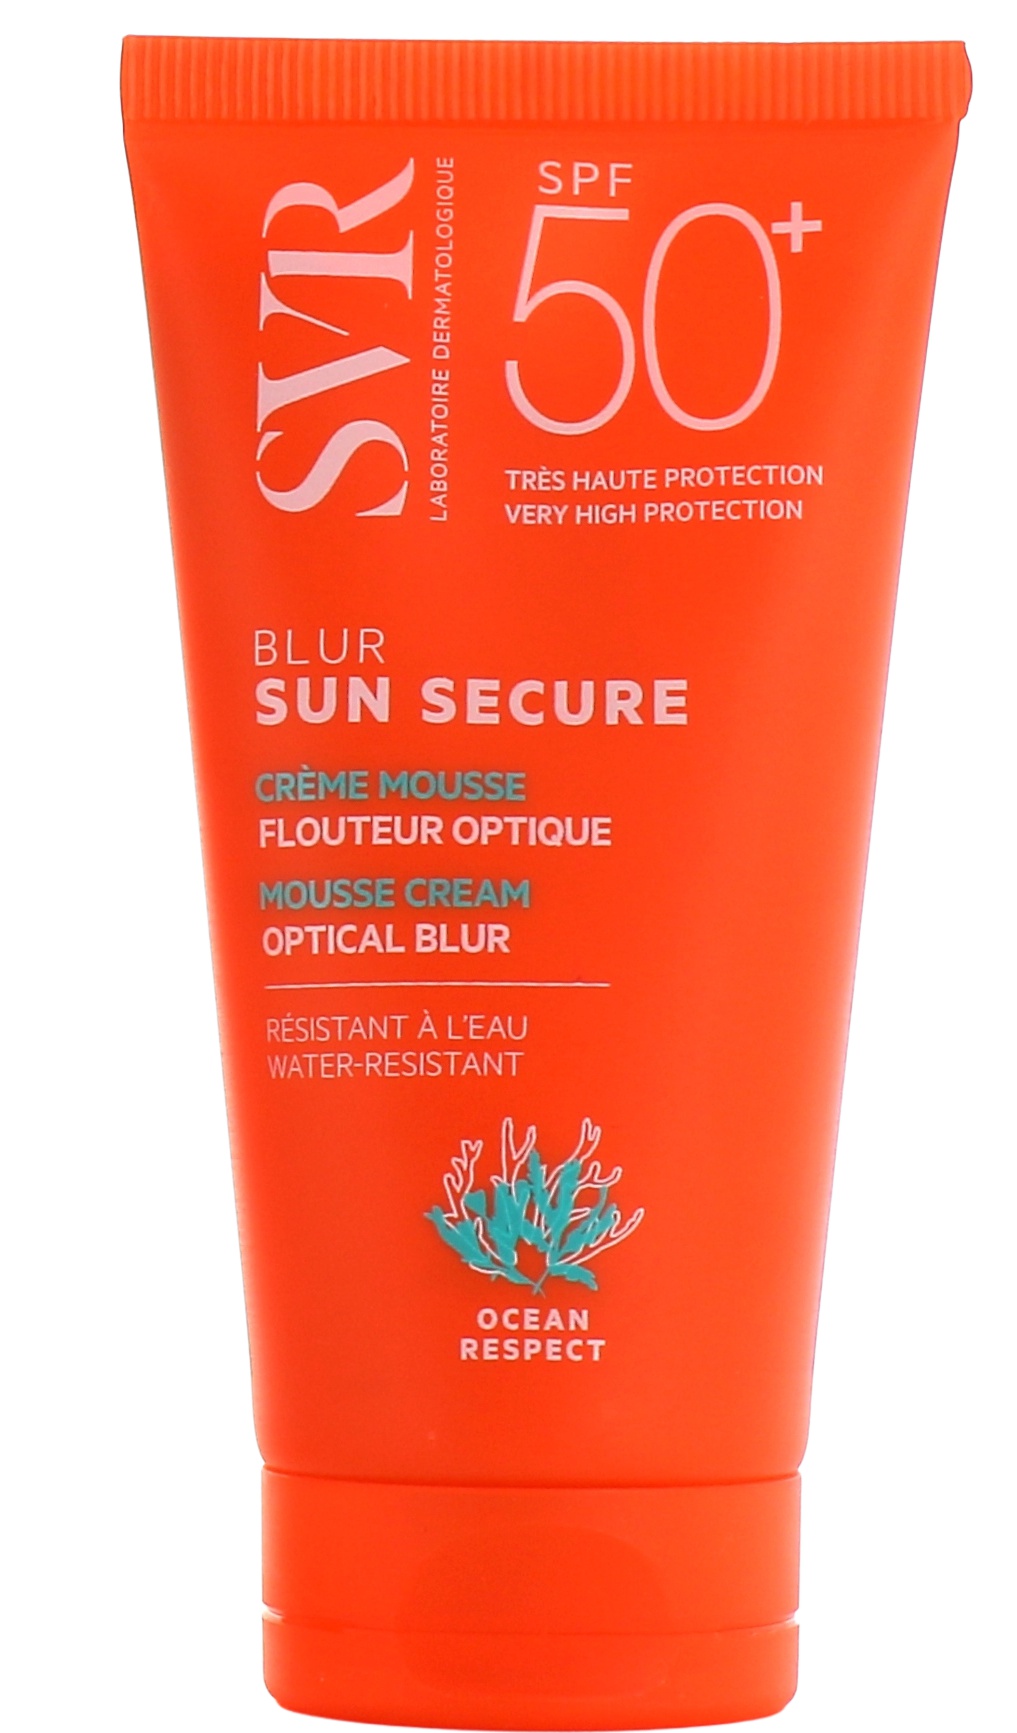 SVR Sun Secure Blur Sans Parfum ingredients (Explained)